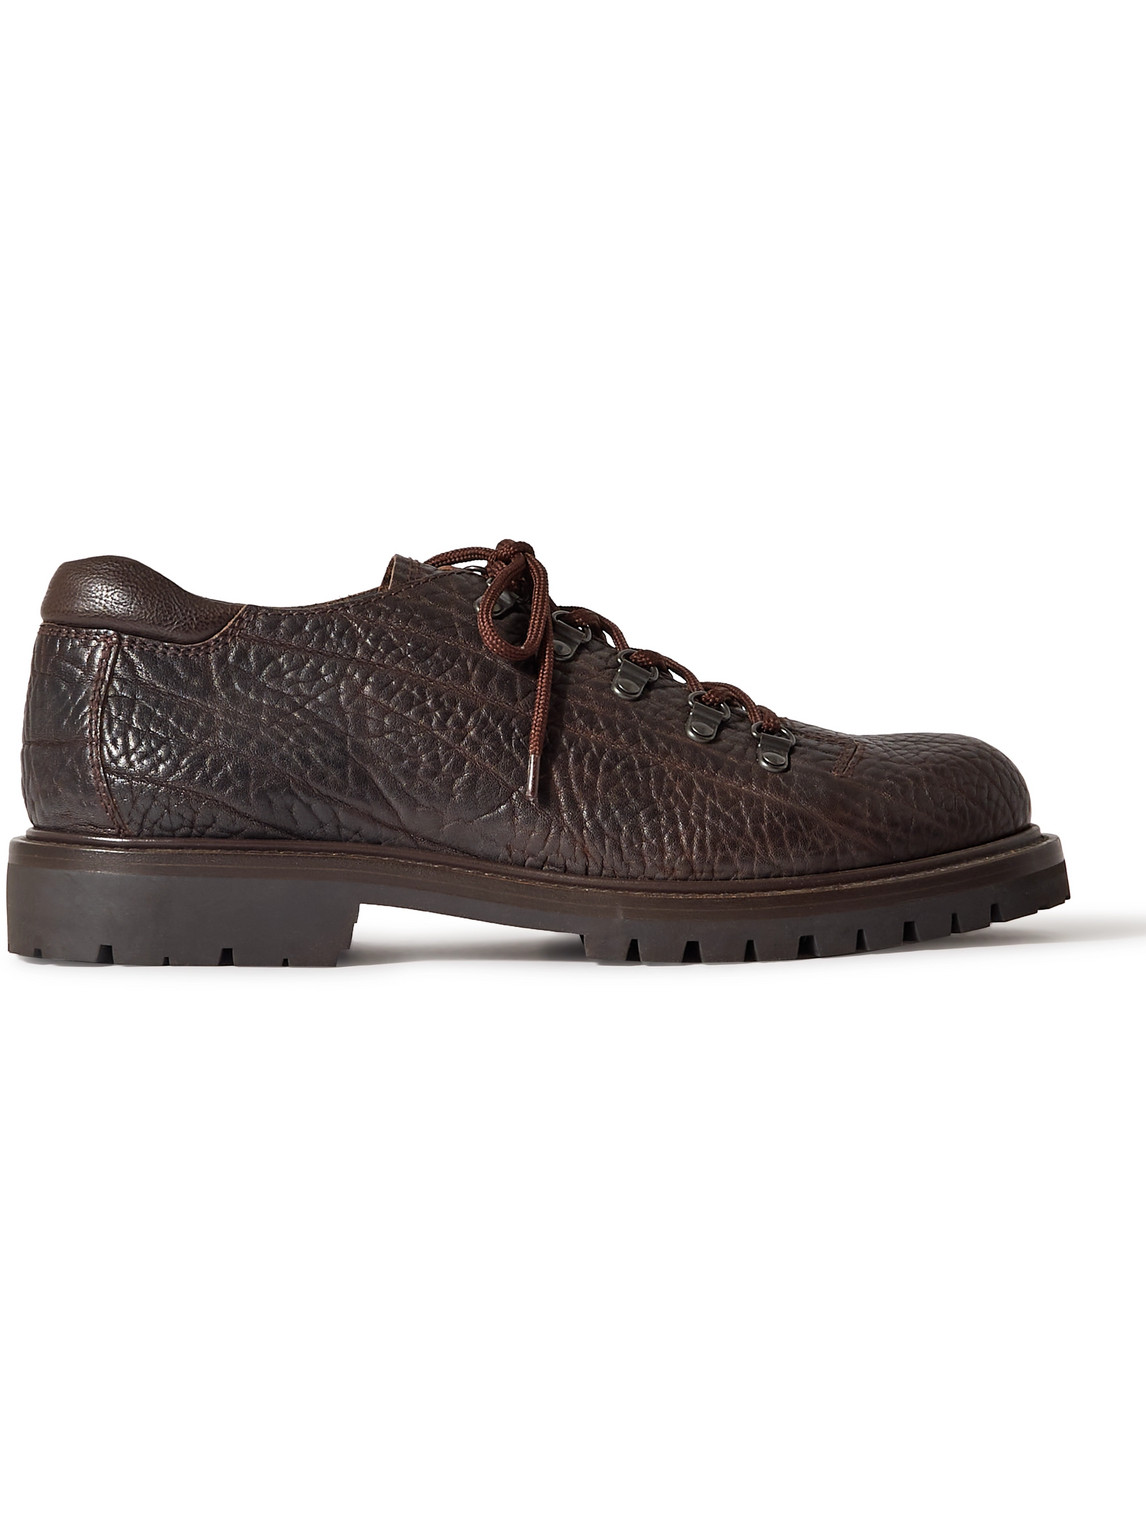 Officine Creative - Full-Grain Leather Derby Shoes - Men - Brown - EU 42 von Officine Creative